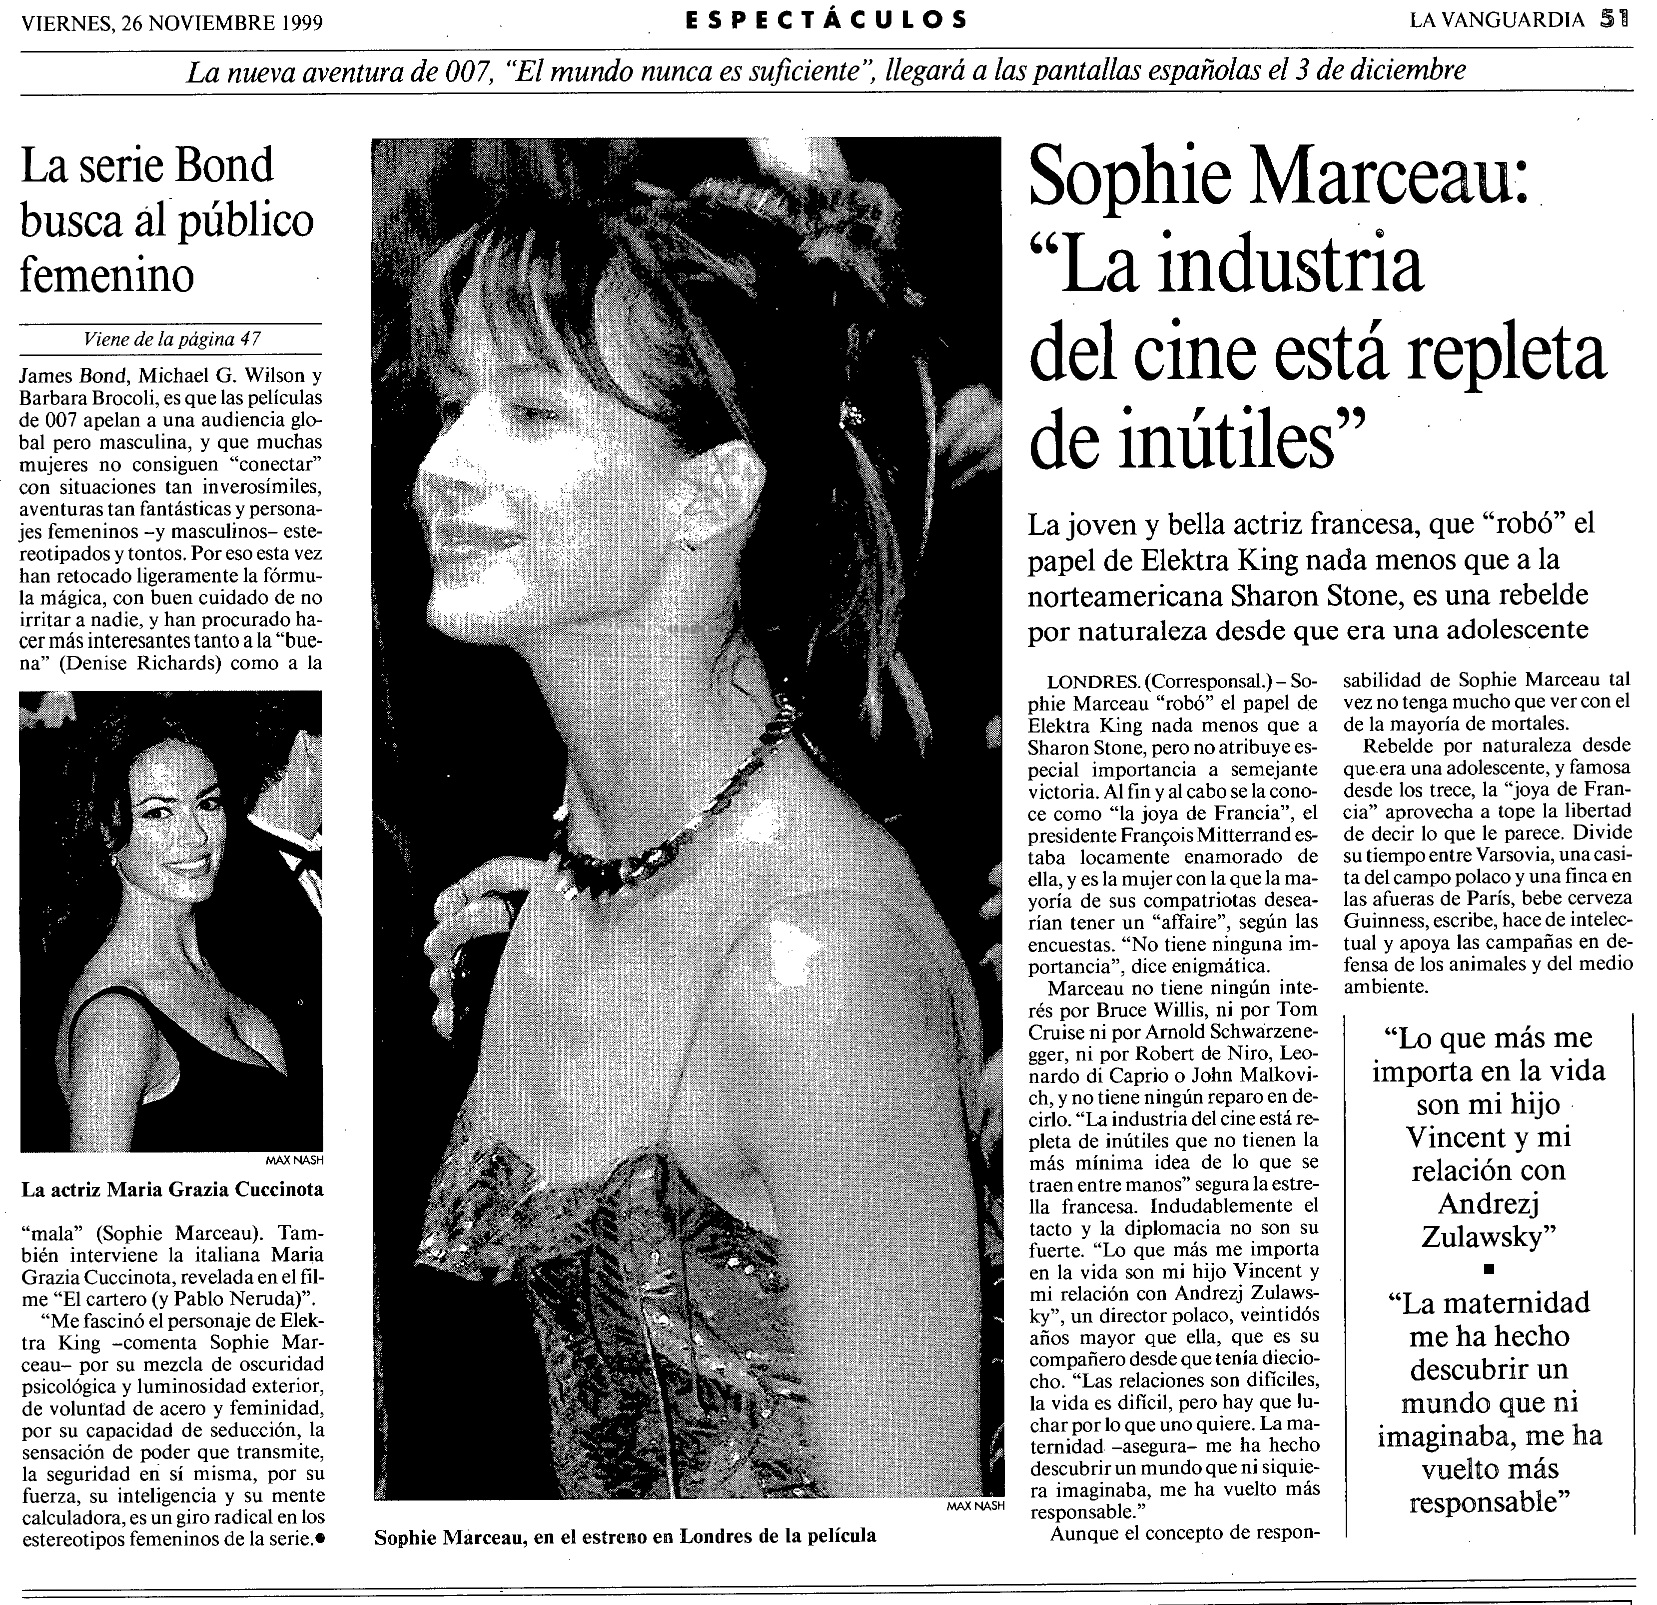 19 1999 11 26 La Vanguardia 051 Sophie Marceau